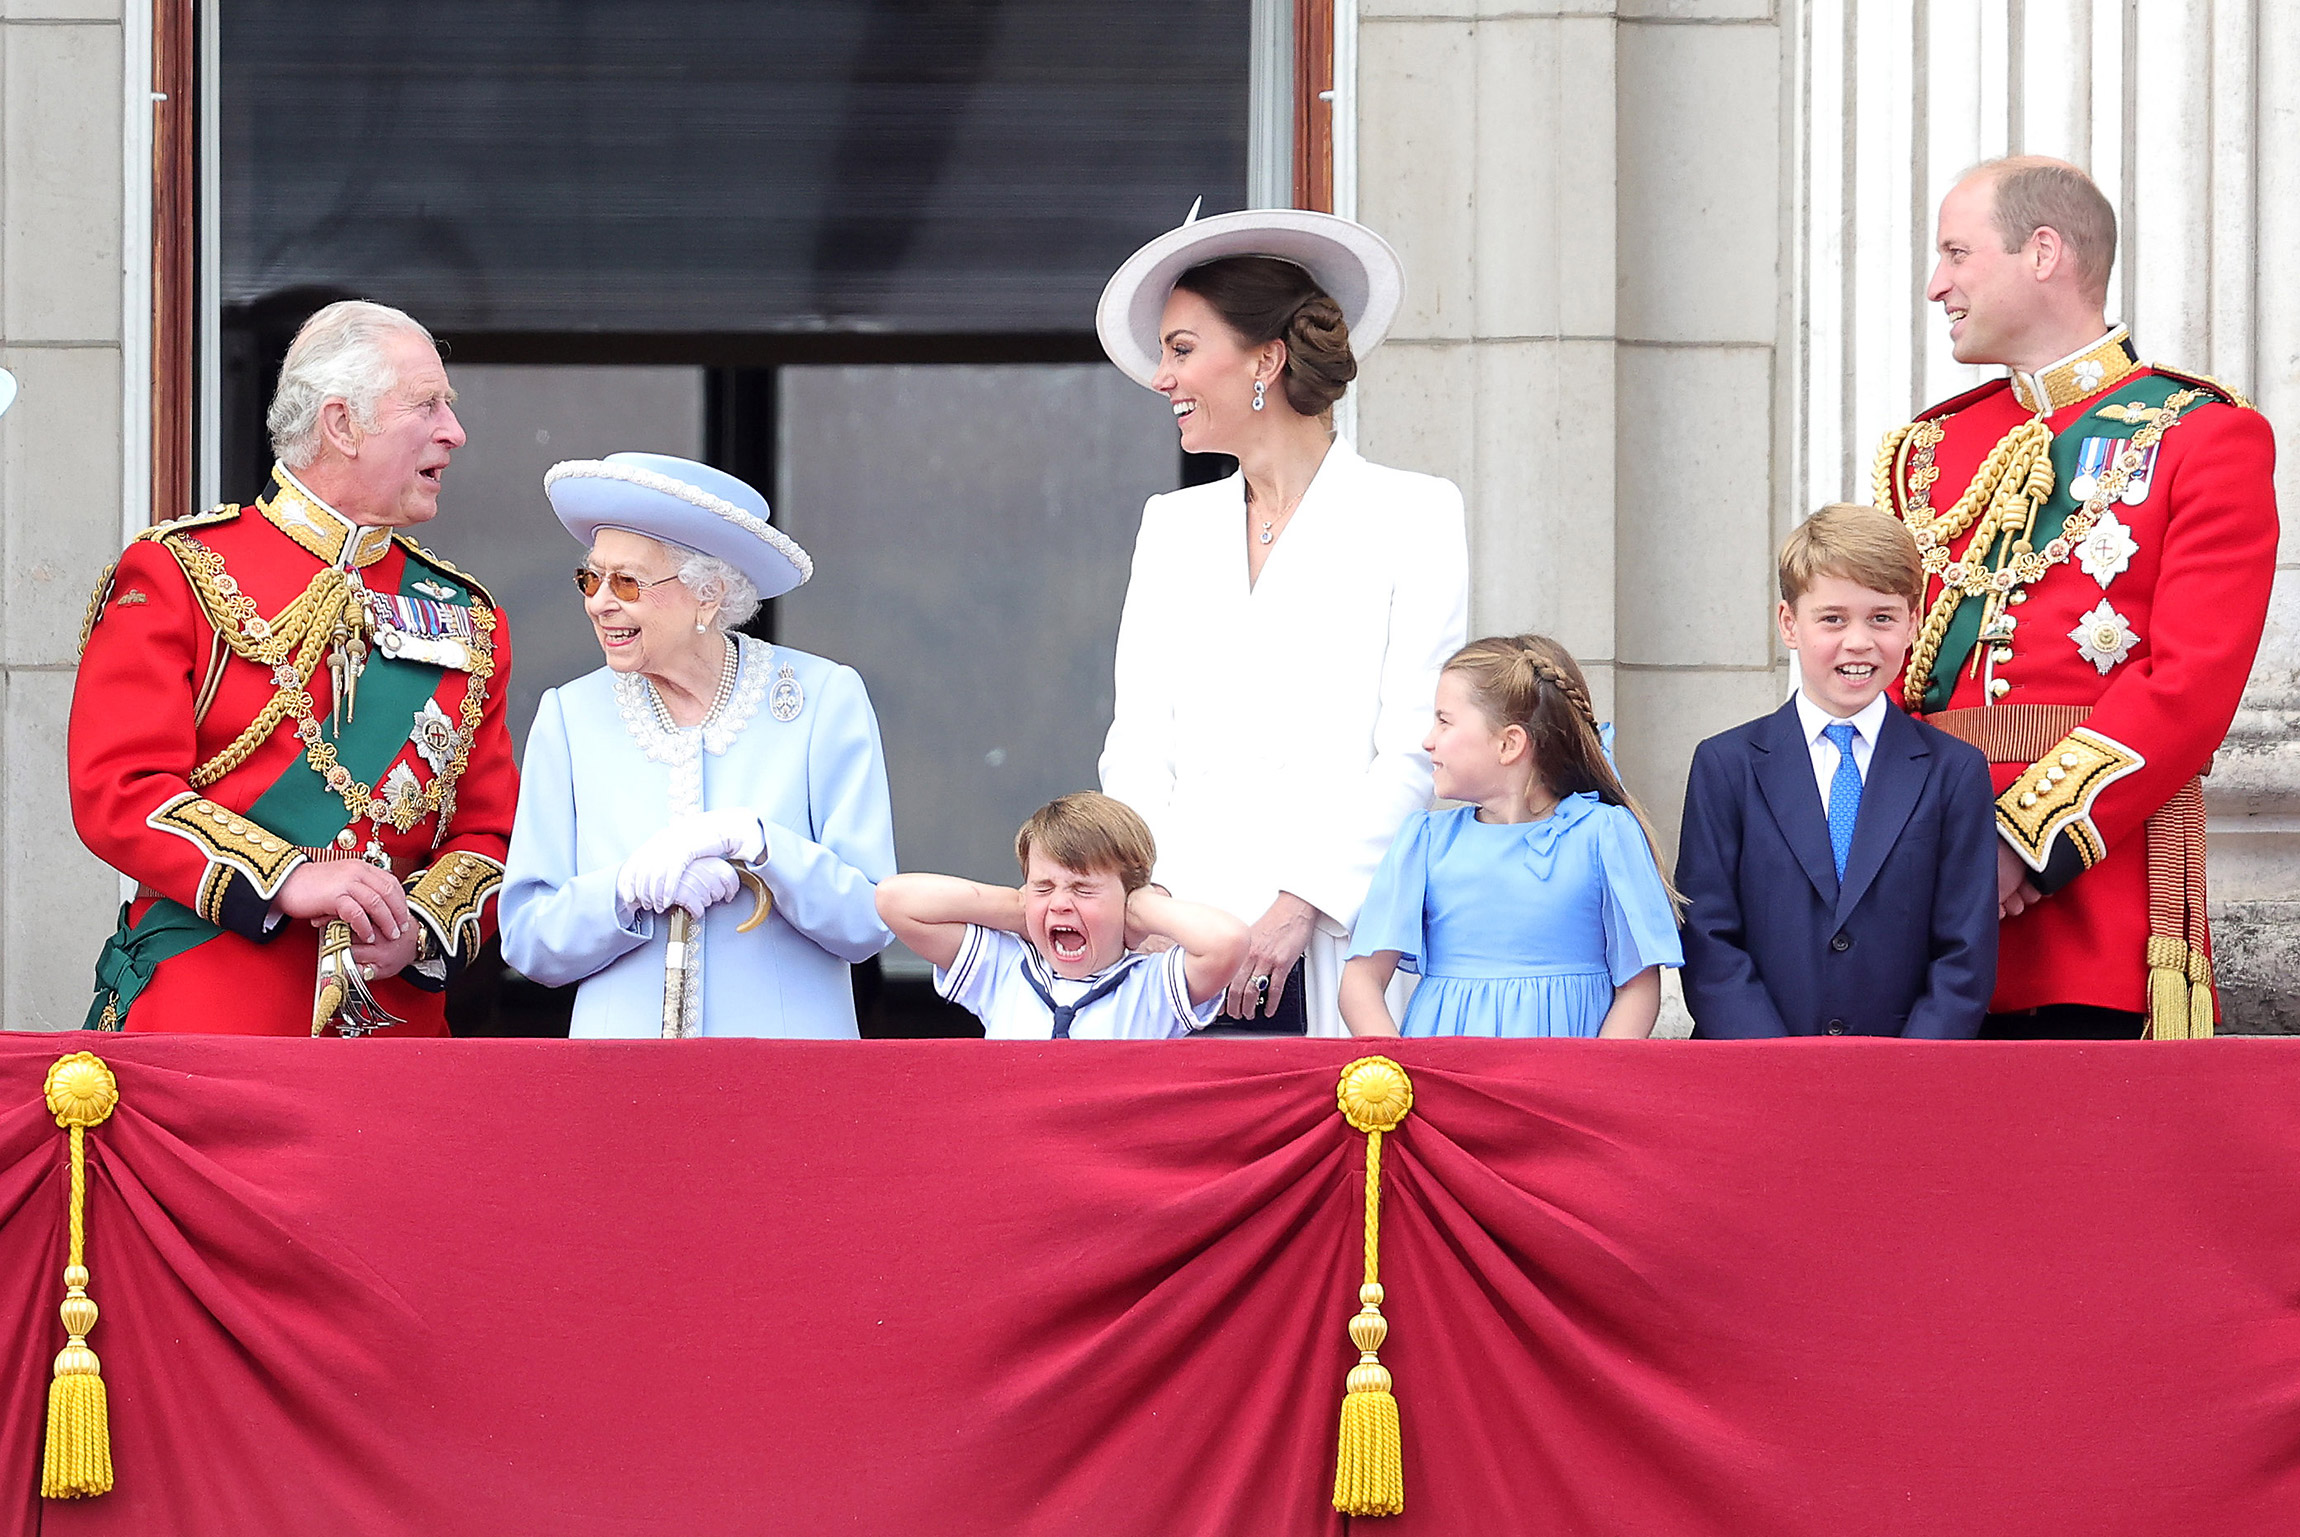 На фото (слева направо): принц Чарльз (ныне король Карл III), королева Елизавета II, принц Луи, Кейт Миддлтон, принцесса Шарлотта, принц Джордж и принц Уильям, Лондон, Великобритания, 2 июня.

6 февраля Елизавета II стала первым британским монархом, отметившим платиновый юбилей правления&nbsp;&mdash; 70-летие на троне. В Великобритании на весь год были запланированы праздничные мероприятия, а со 2 по 5 июня в стране объявили выходные в честь годовщины. Также в начале июня британцы празднуют официальный день рождения королевы. В этом году праздничные мероприятия начались с традиционного парада в честь Елизаветы II, который прошел 2 июня.

Спустя три месяца, 8 сентября, она скончалась на 97-м году жизни. Новым королем Великобритании стал ее старший сын Чарльз